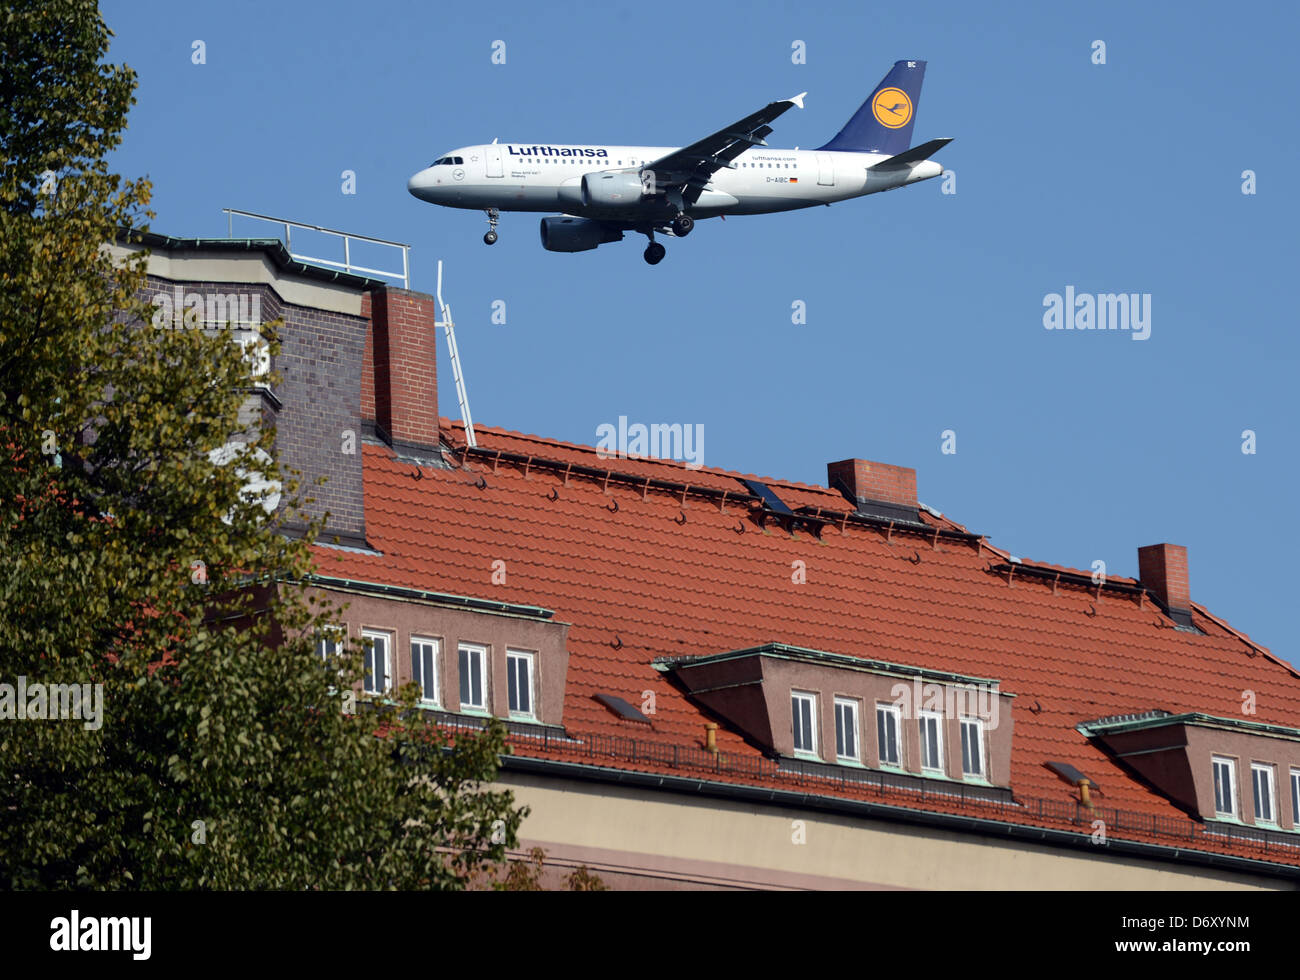 Berlin, Deutschland, Lufthansa Flugzeug Landung auf dem Flughafen Berlin-Tegel Stockfoto